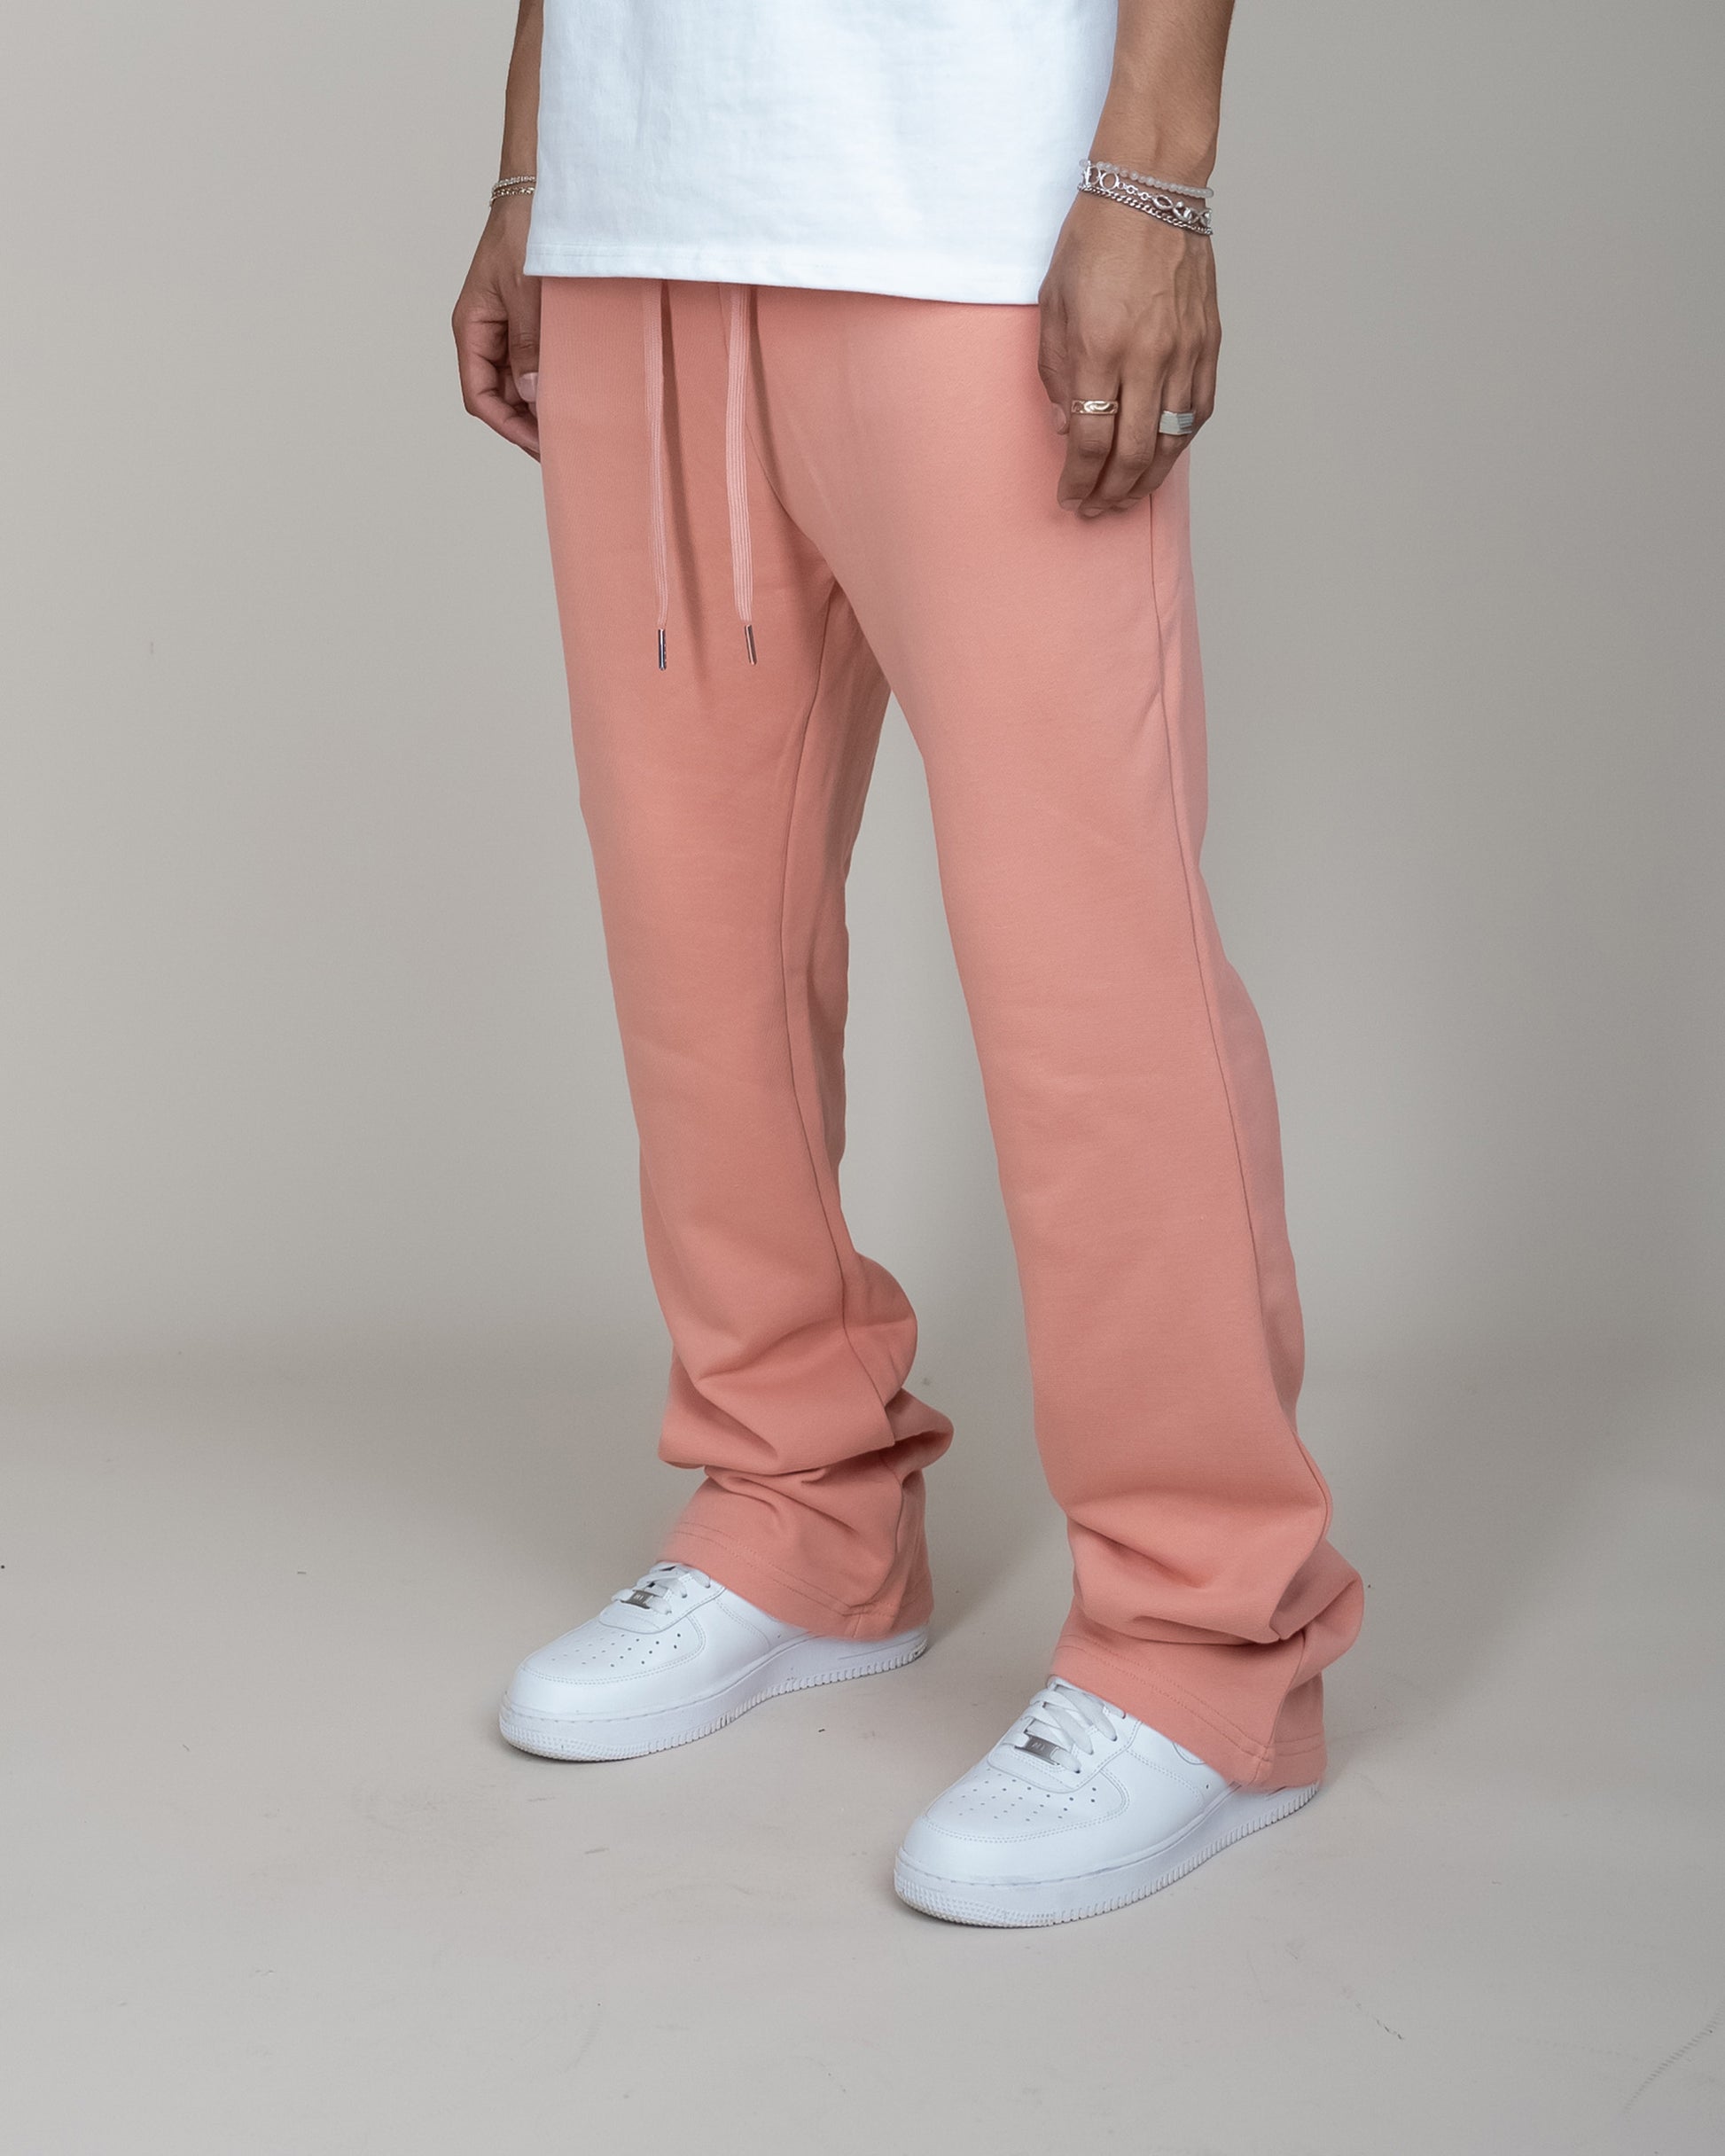 Buy Everyday Fleece Classic Sweatpants - Order Bottoms online 5000007134 -  PINK US